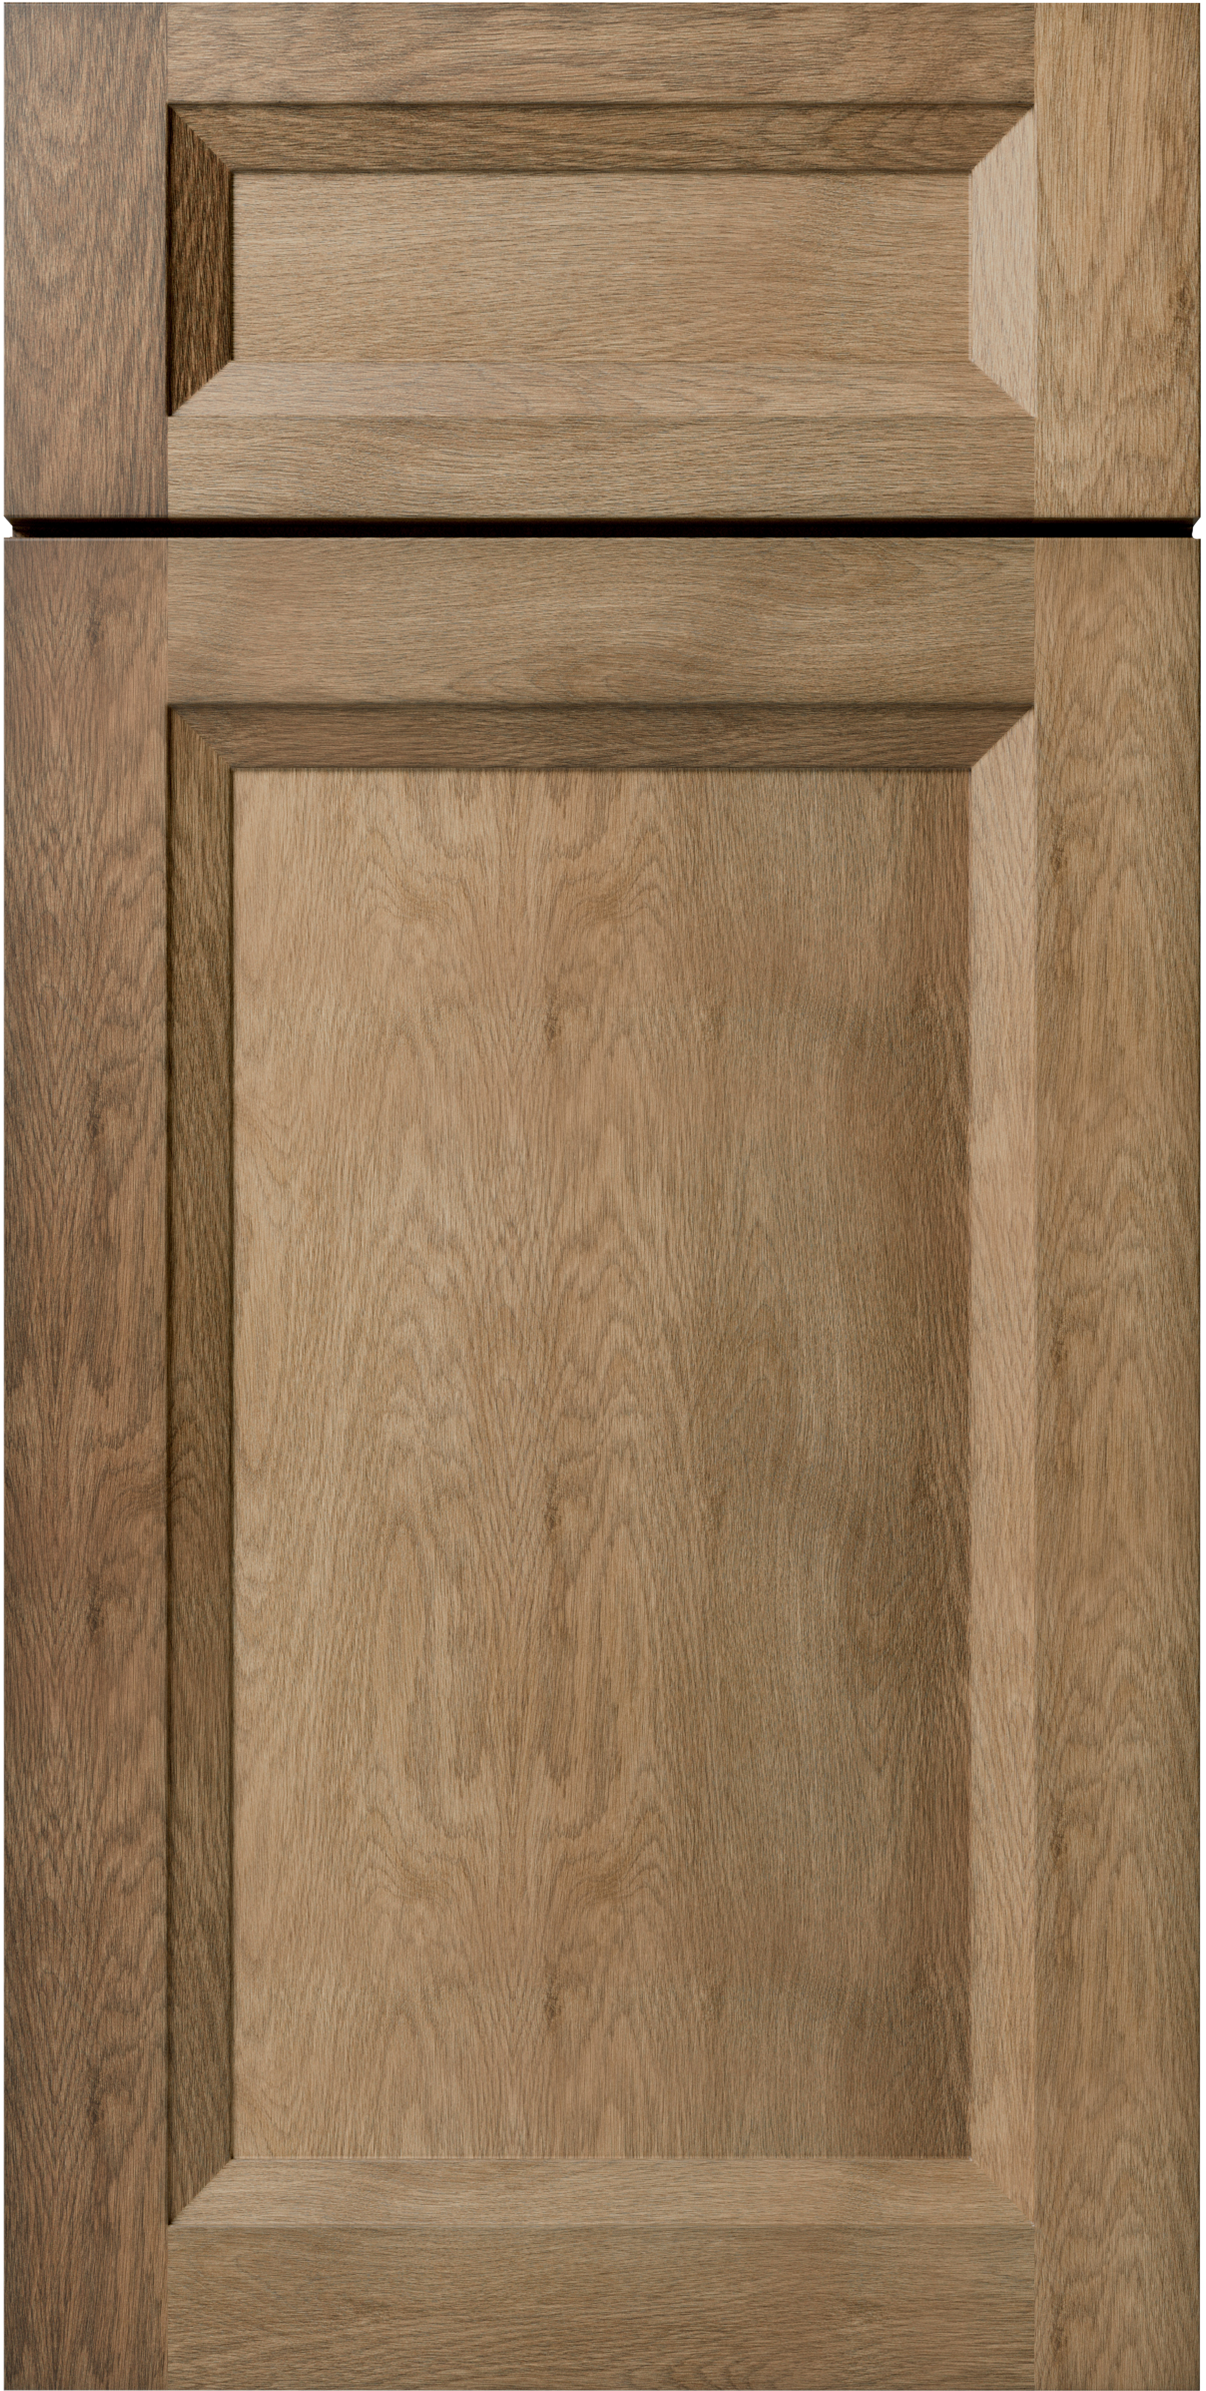 OXFORD TOFFEE SAMPLE DOOR - 11"W X 15"H X 3/4"D